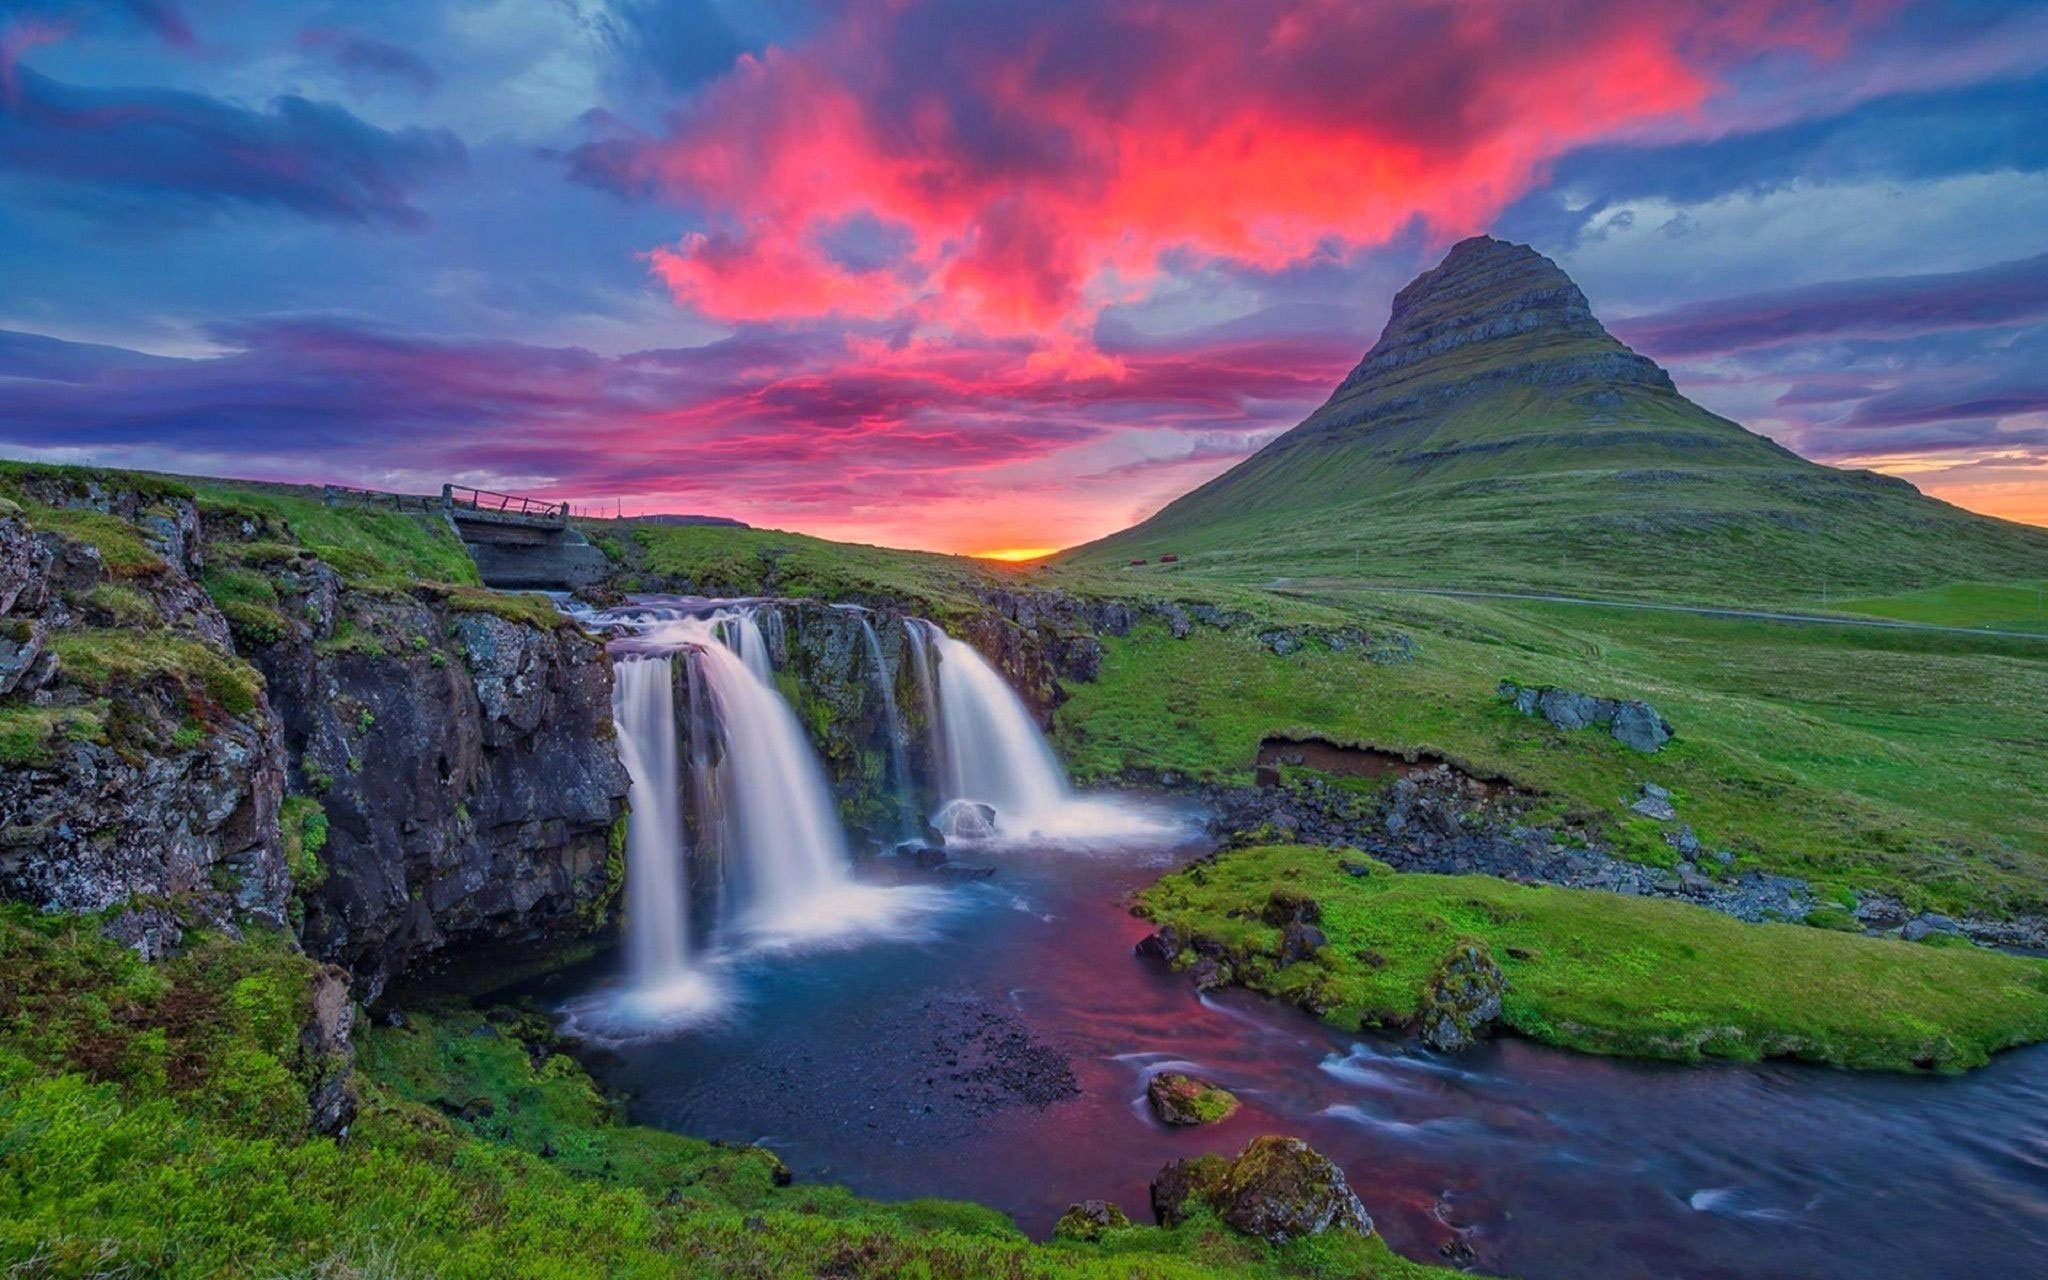 Природные достопримечательности страны. LG 42lb561v. Телевизор LG 42lb561v. Водопад Годафосс, Исландия. Исландия Рейкьявик природа.